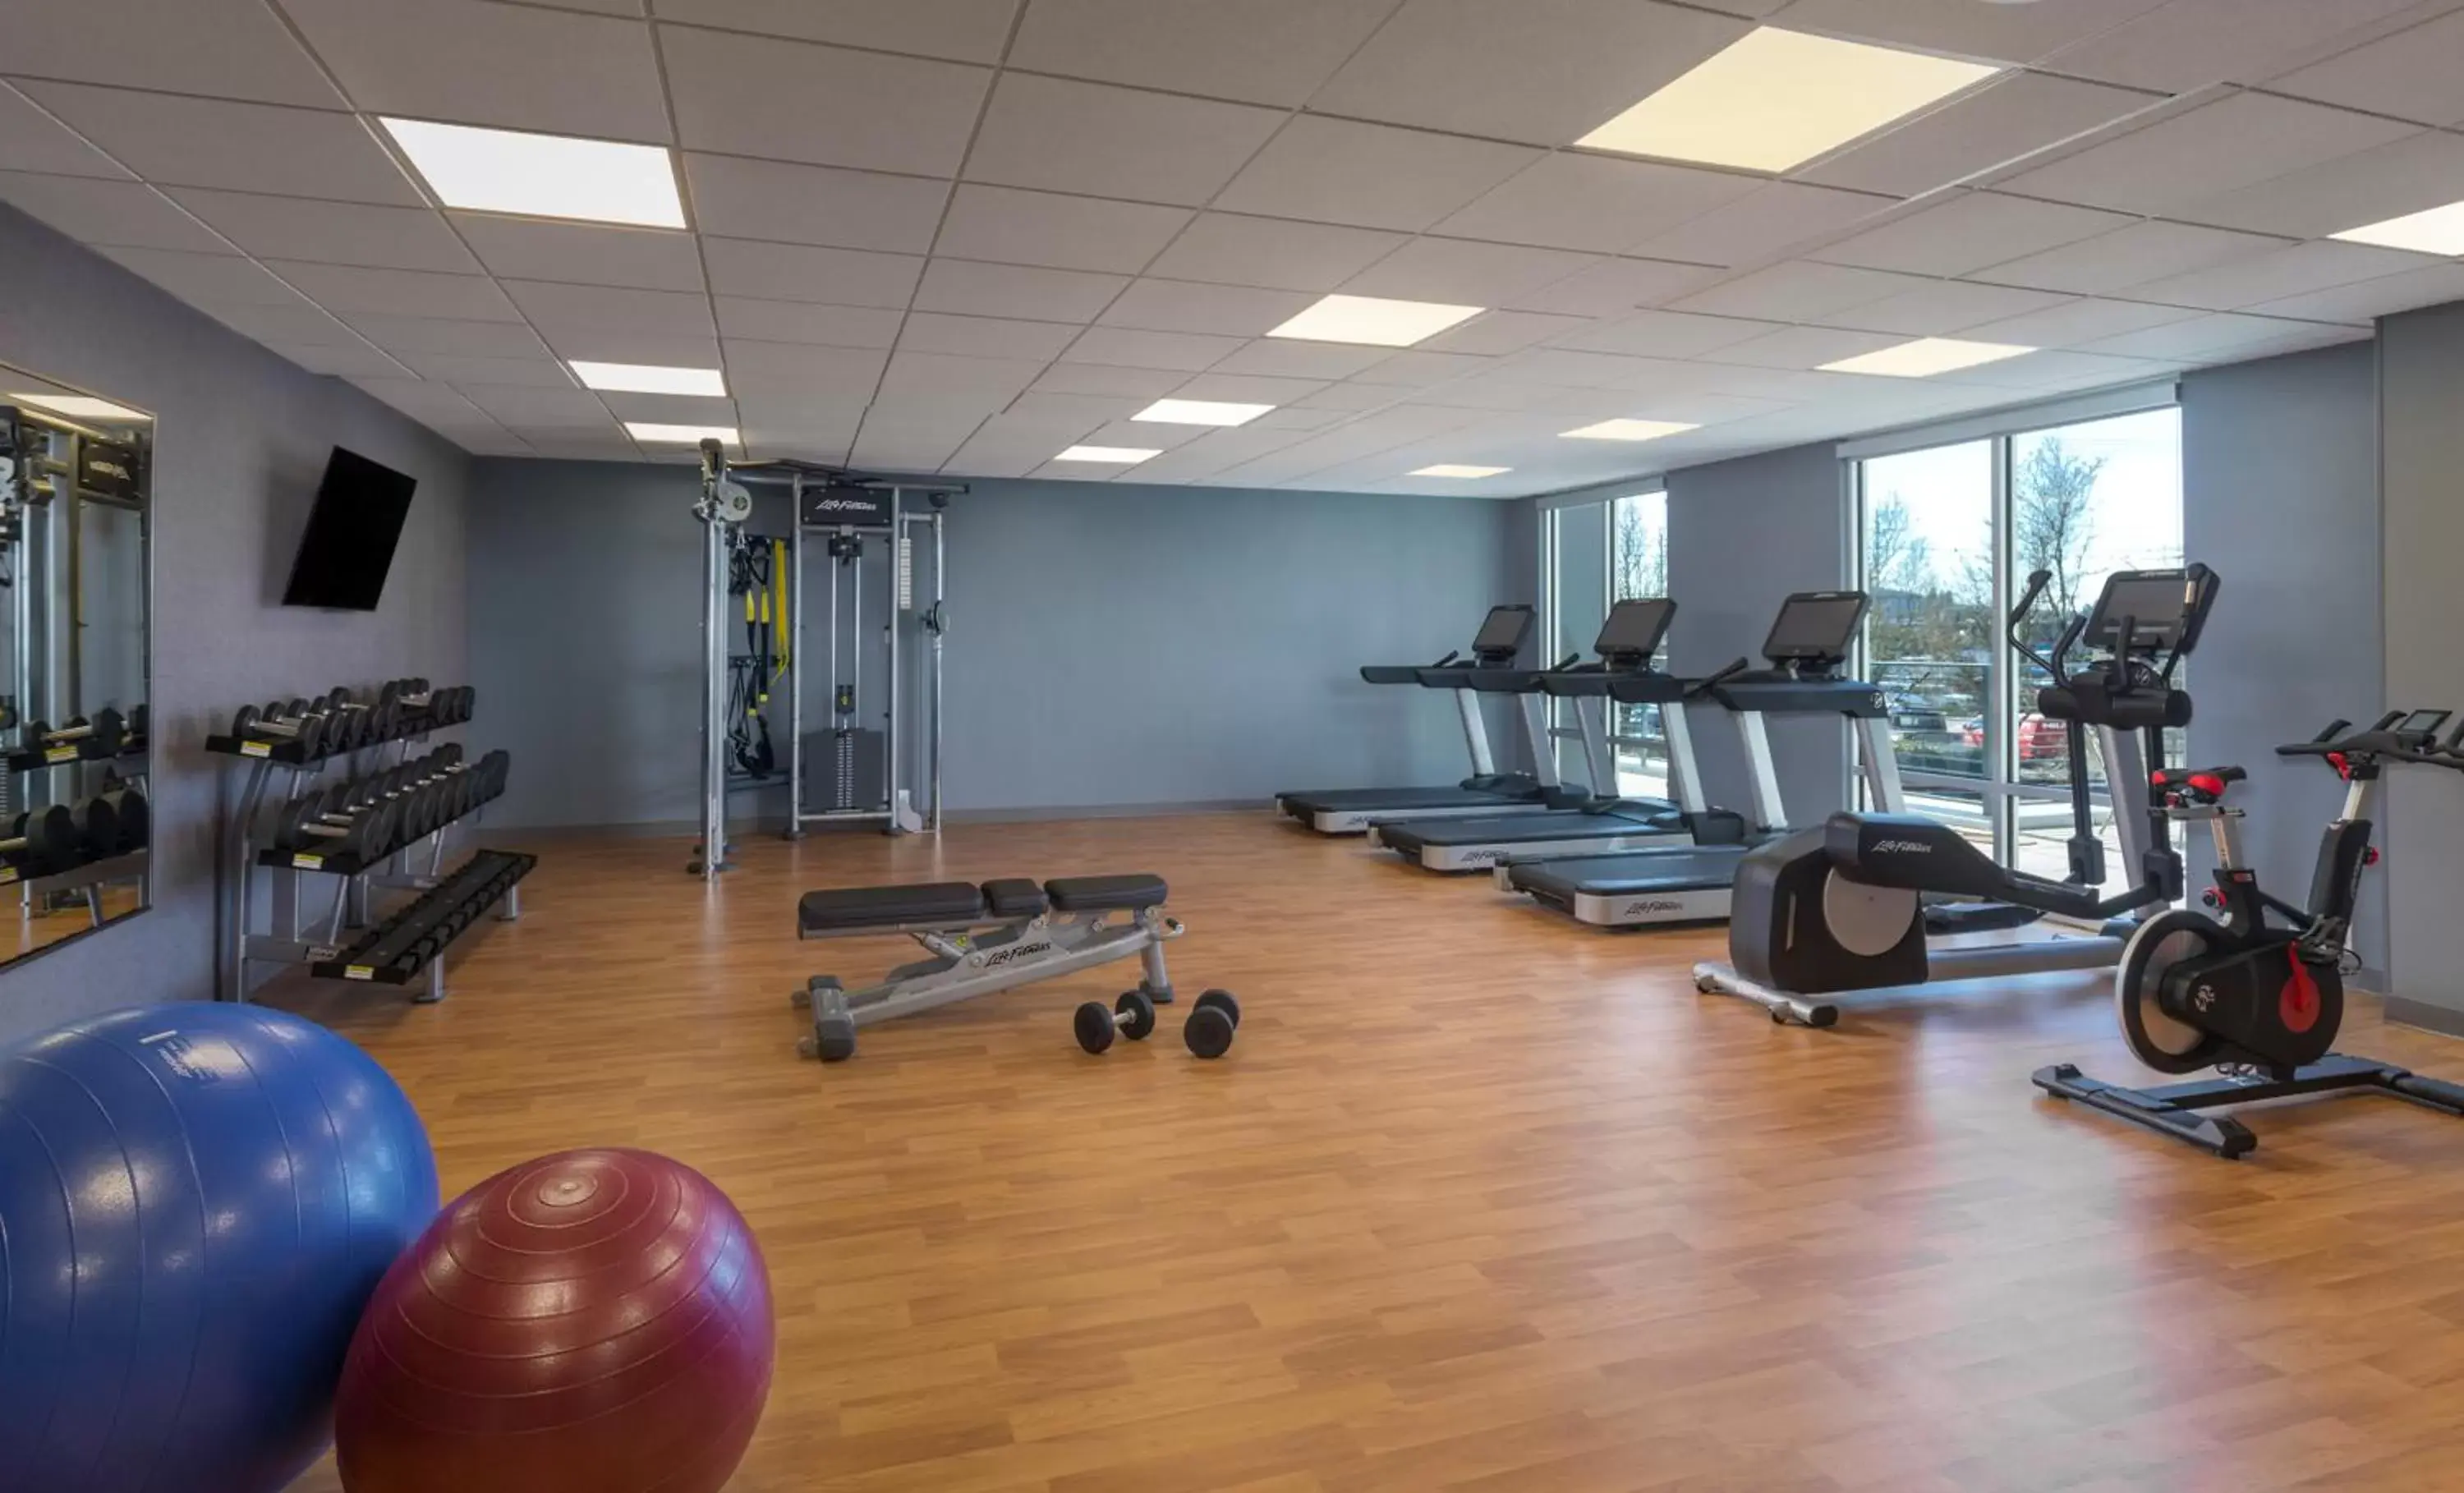 Fitness centre/facilities, Fitness Center/Facilities in Hyatt House Portland/Beaverton